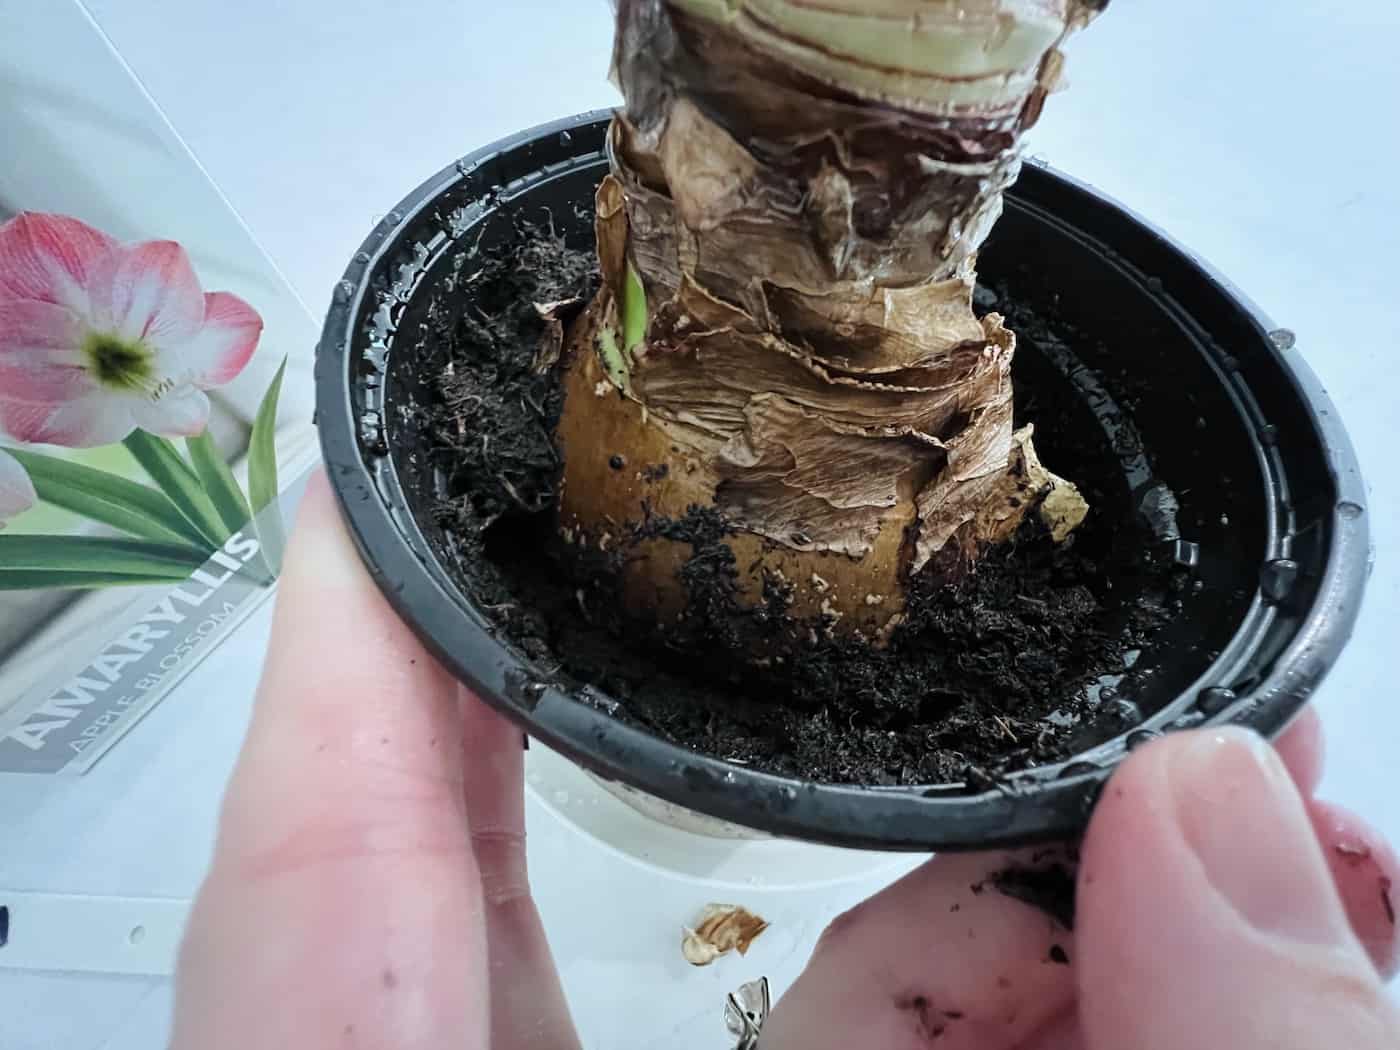 Planted amaryllis bulb